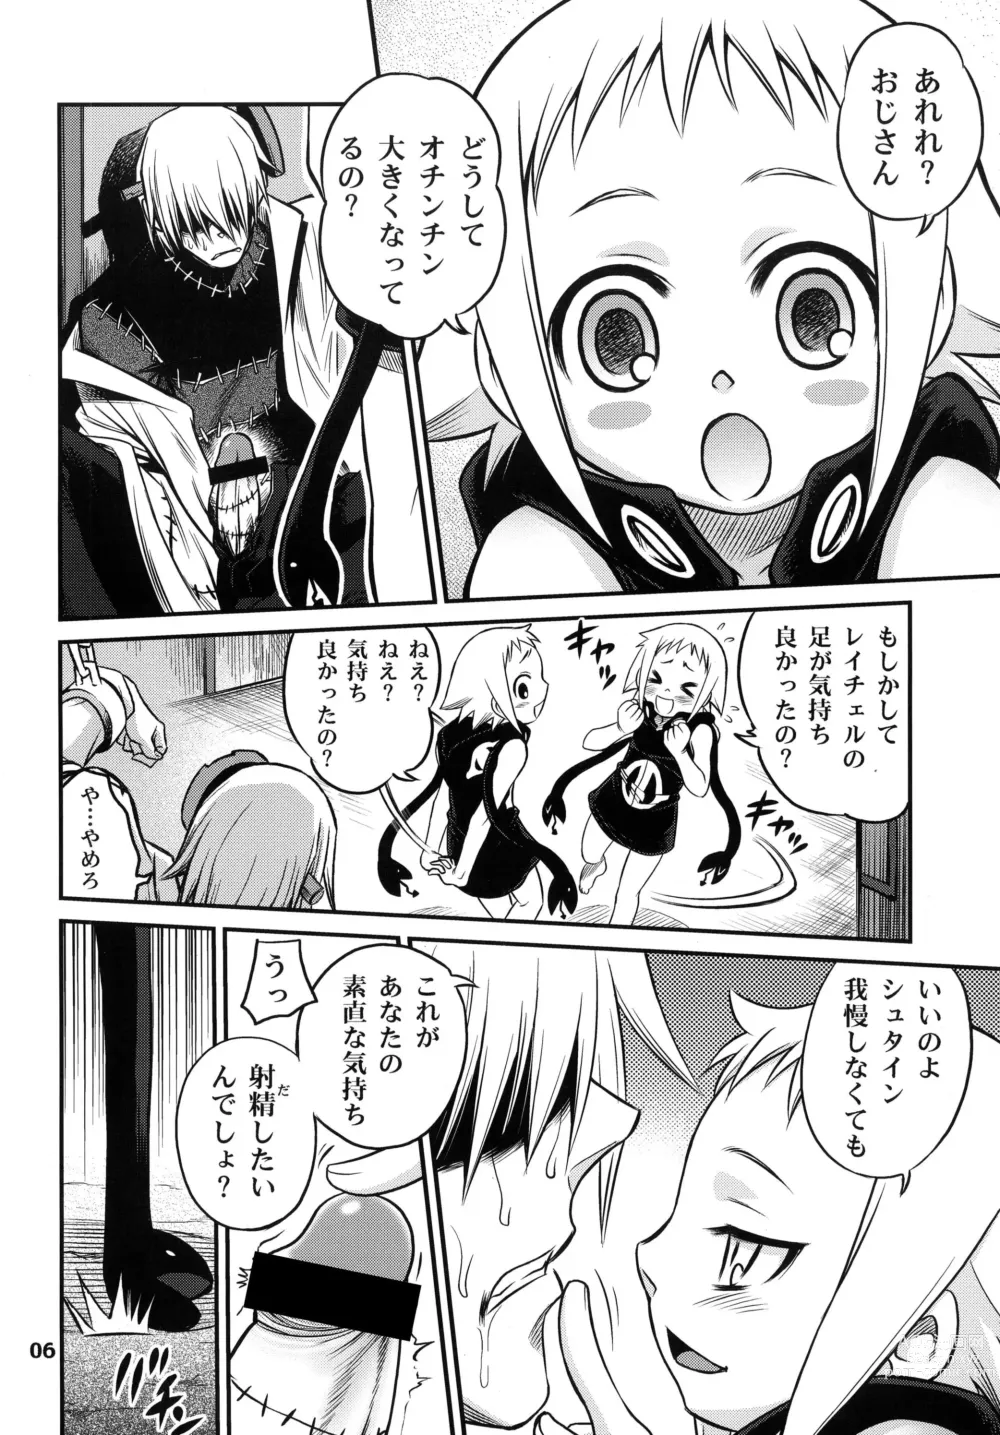 Page 6 of doujinshi Medu-tan